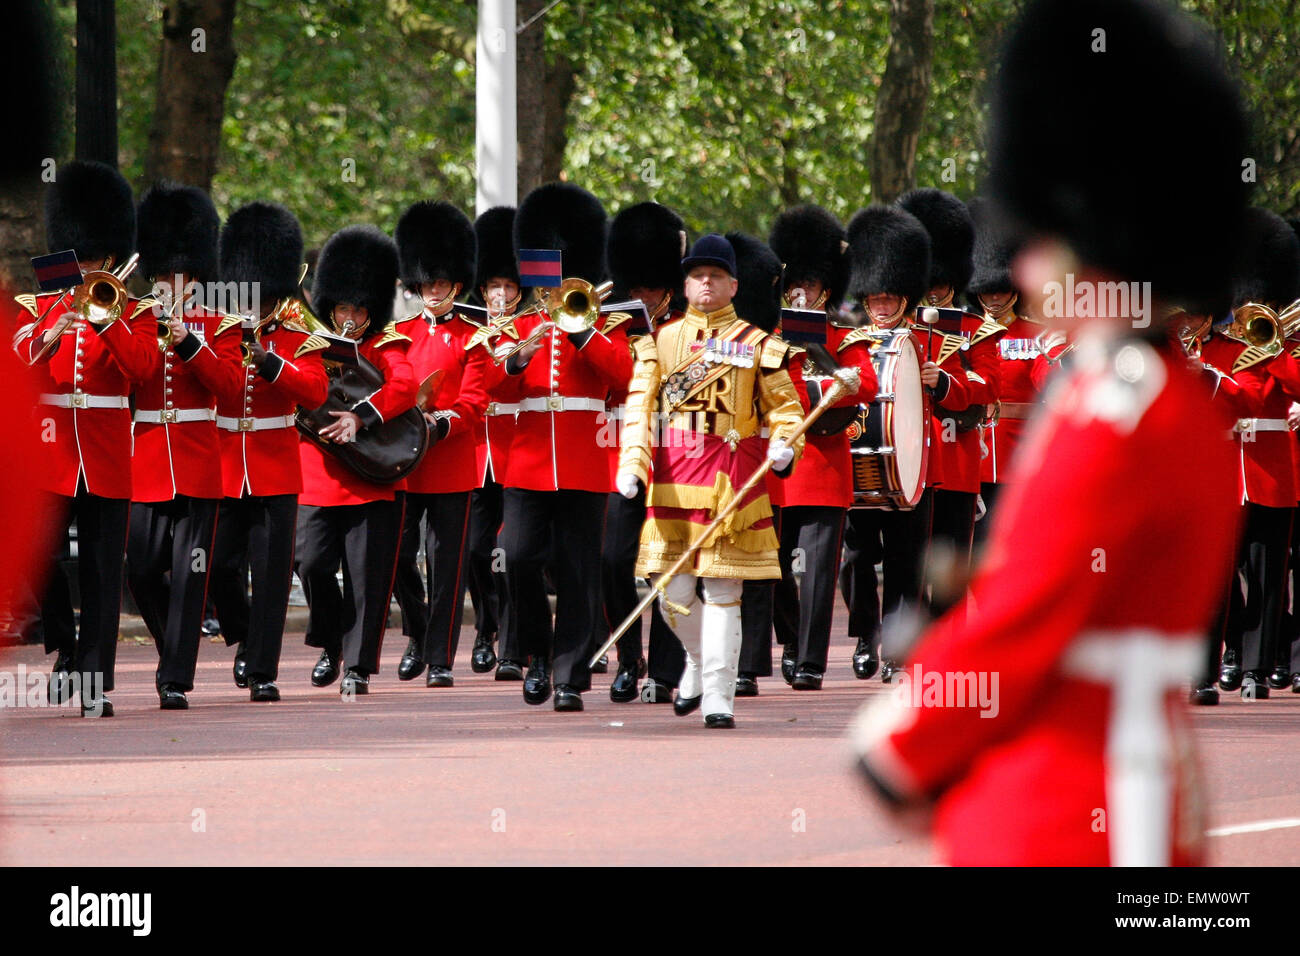 London, UK - 16. Juni 2012: Queen es Bands bei Queen es Birthday Parade. -Feiern Königin von Queens Birthday Parade statt Stockfoto